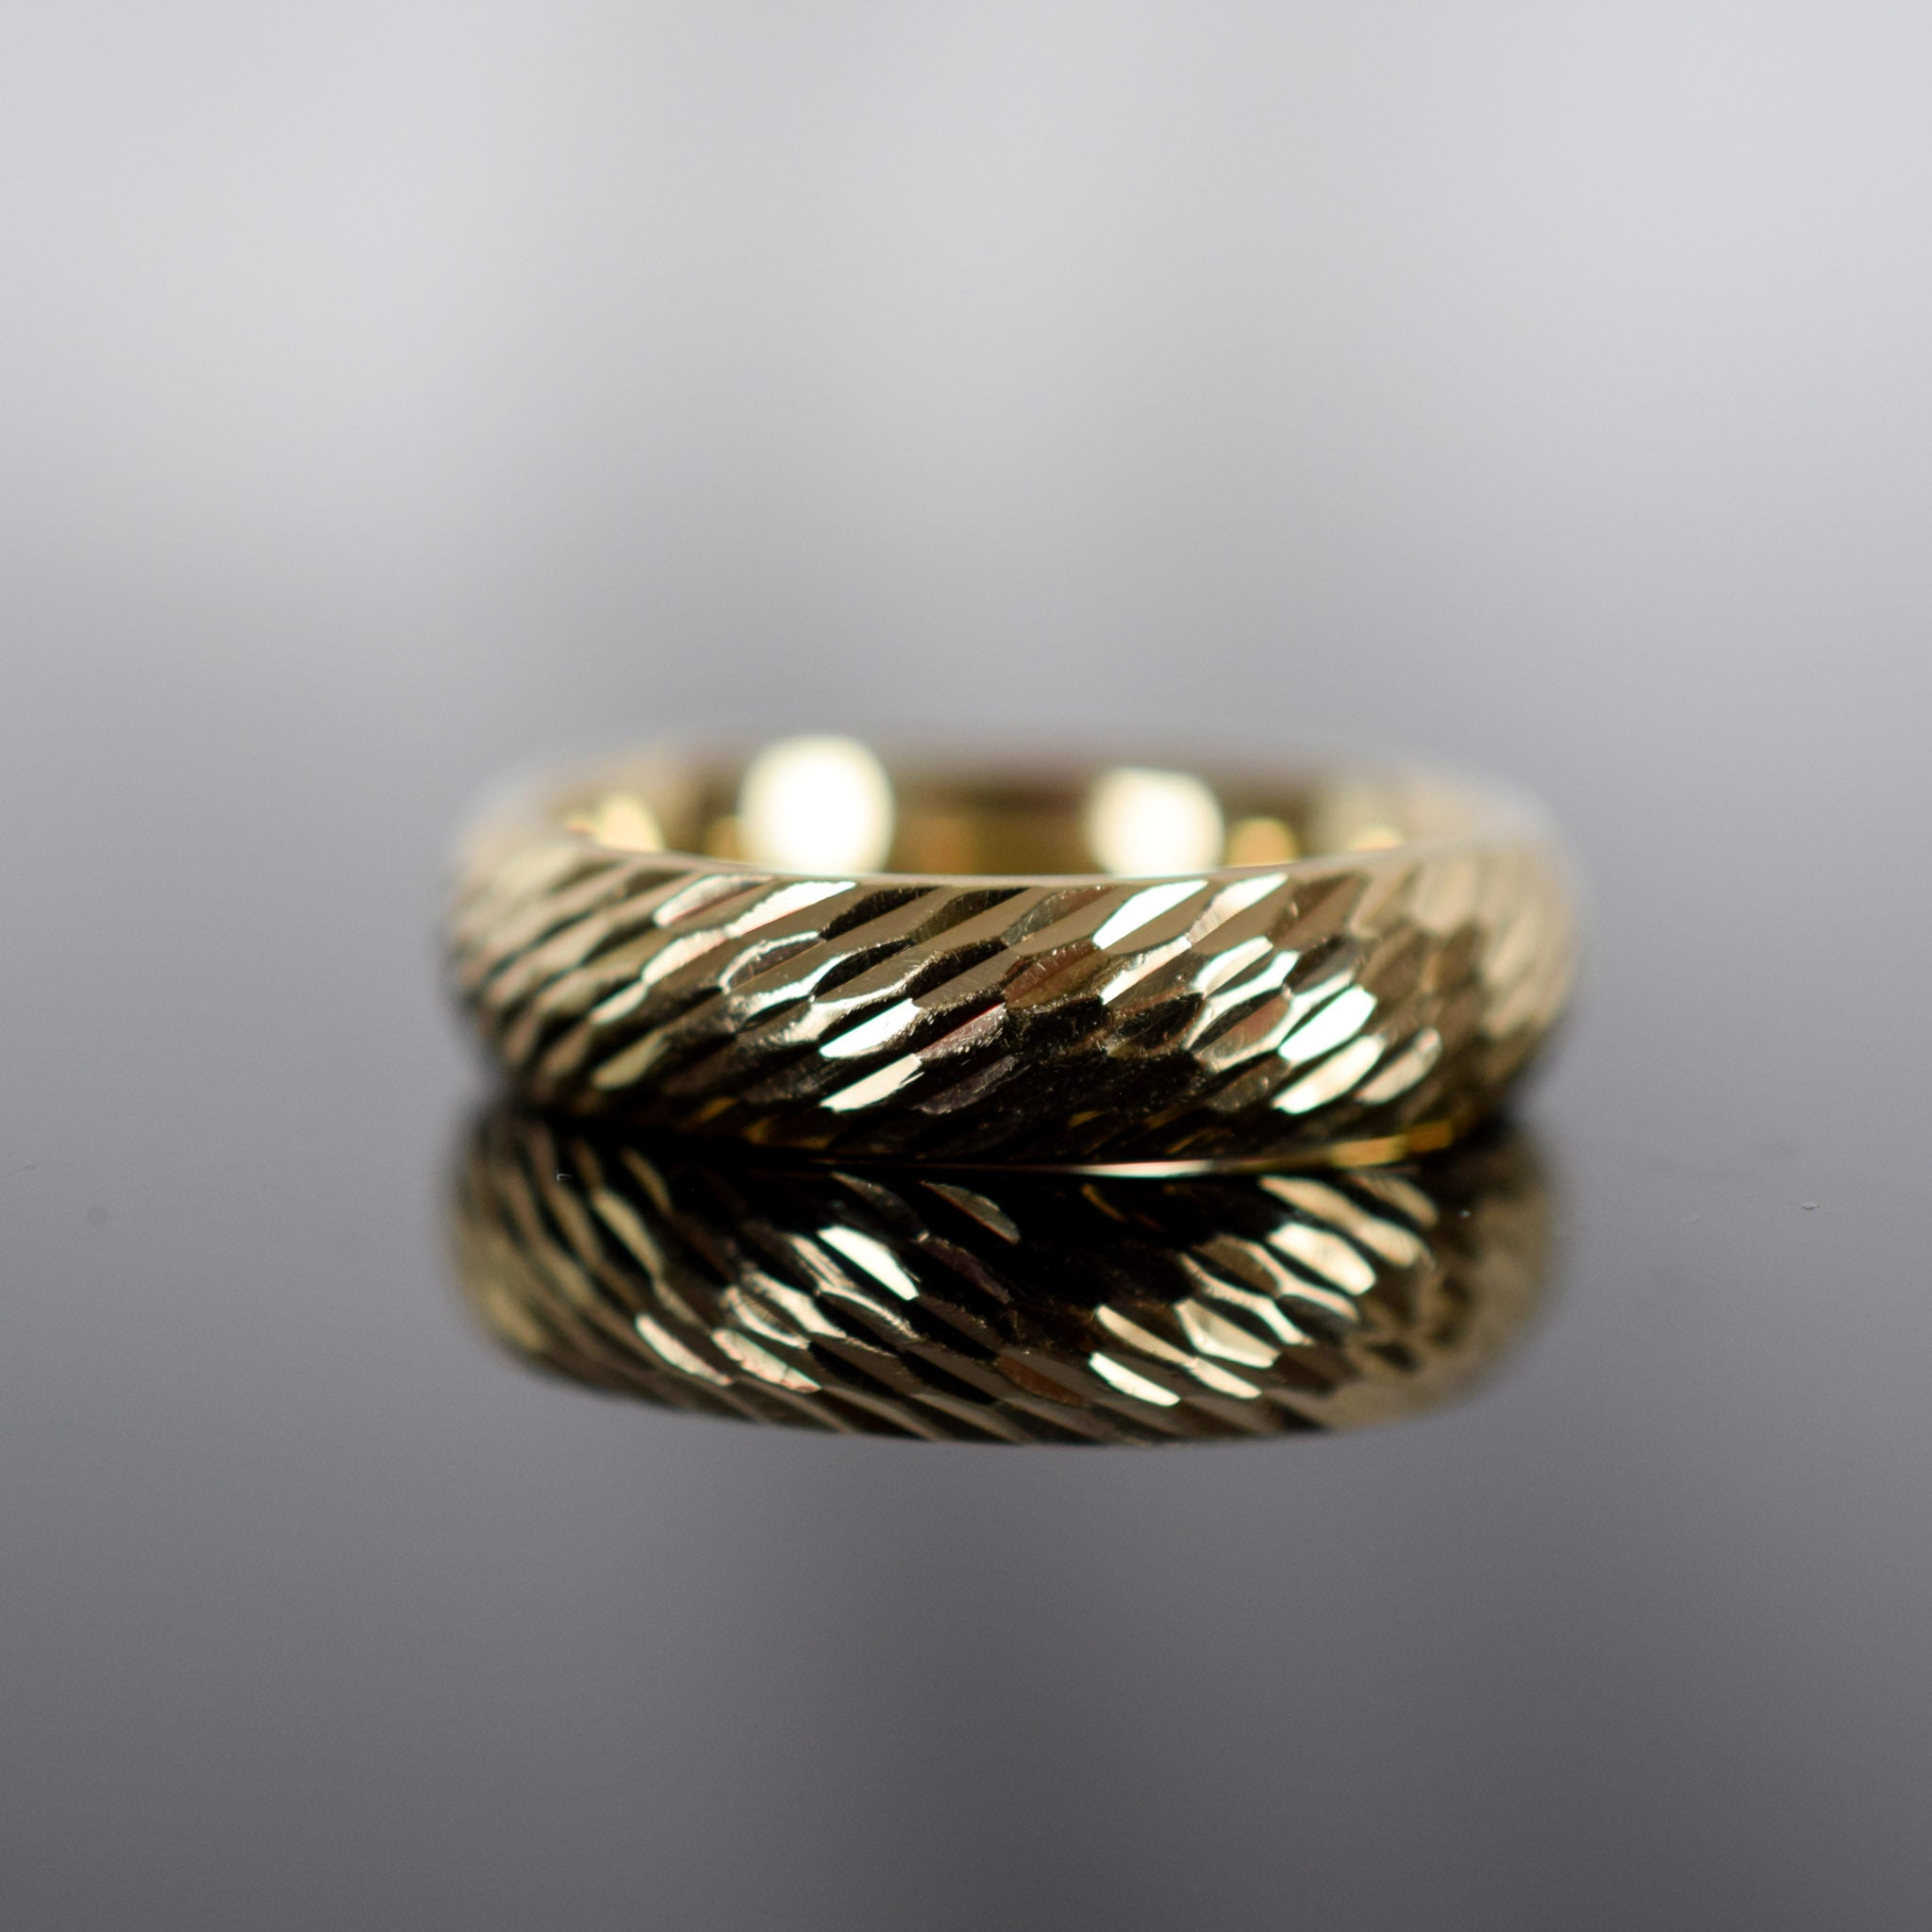 Vintage gold ring for sale, folklor 